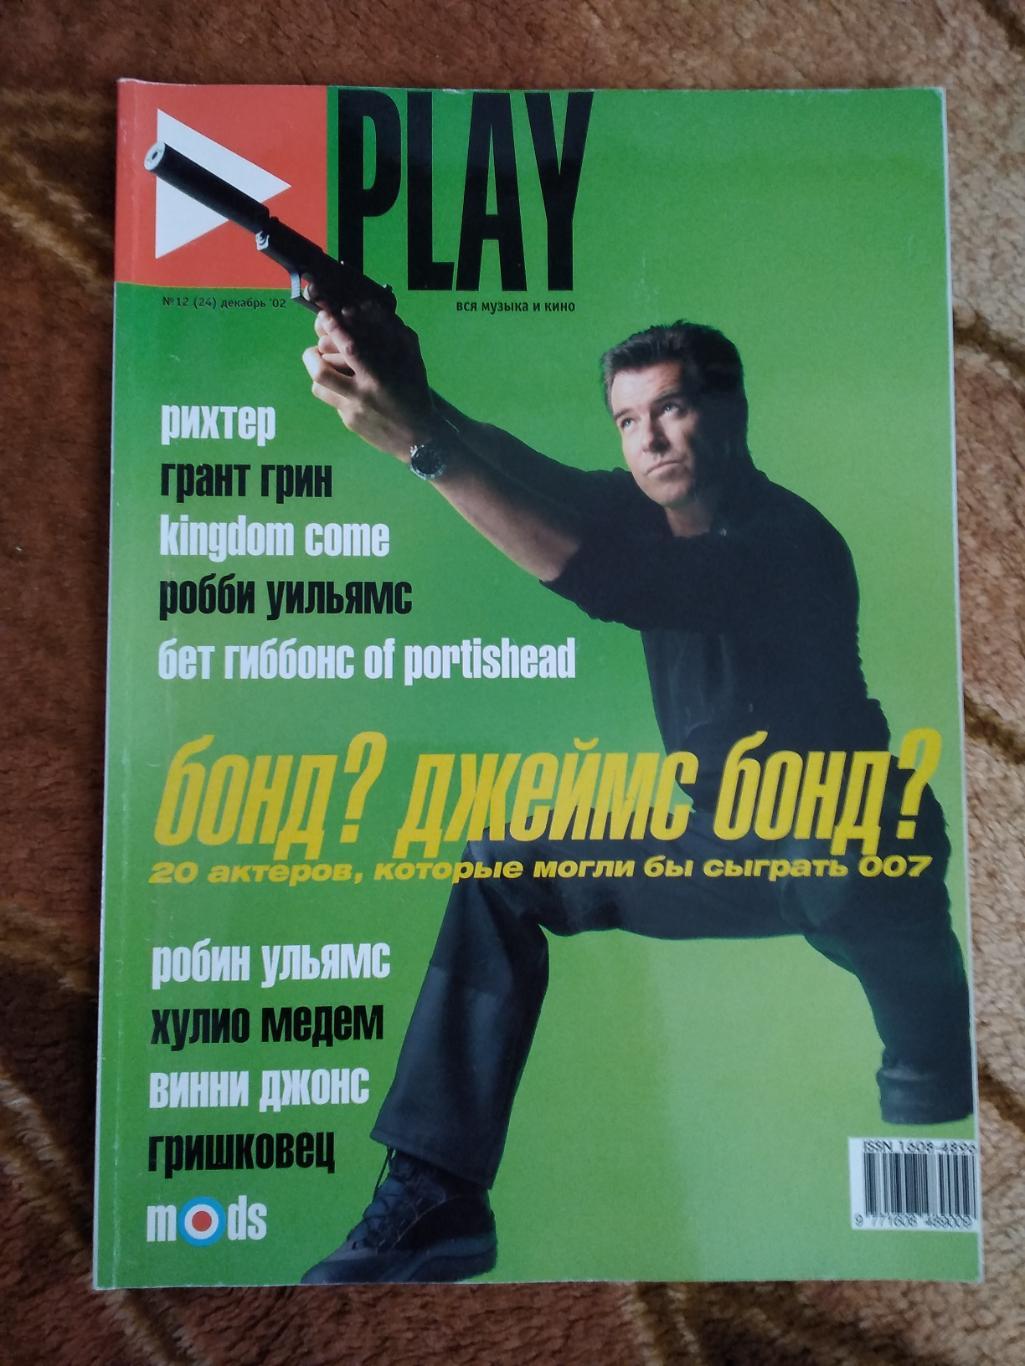 Журнал.Плэй/Play. № 12 2002 г.